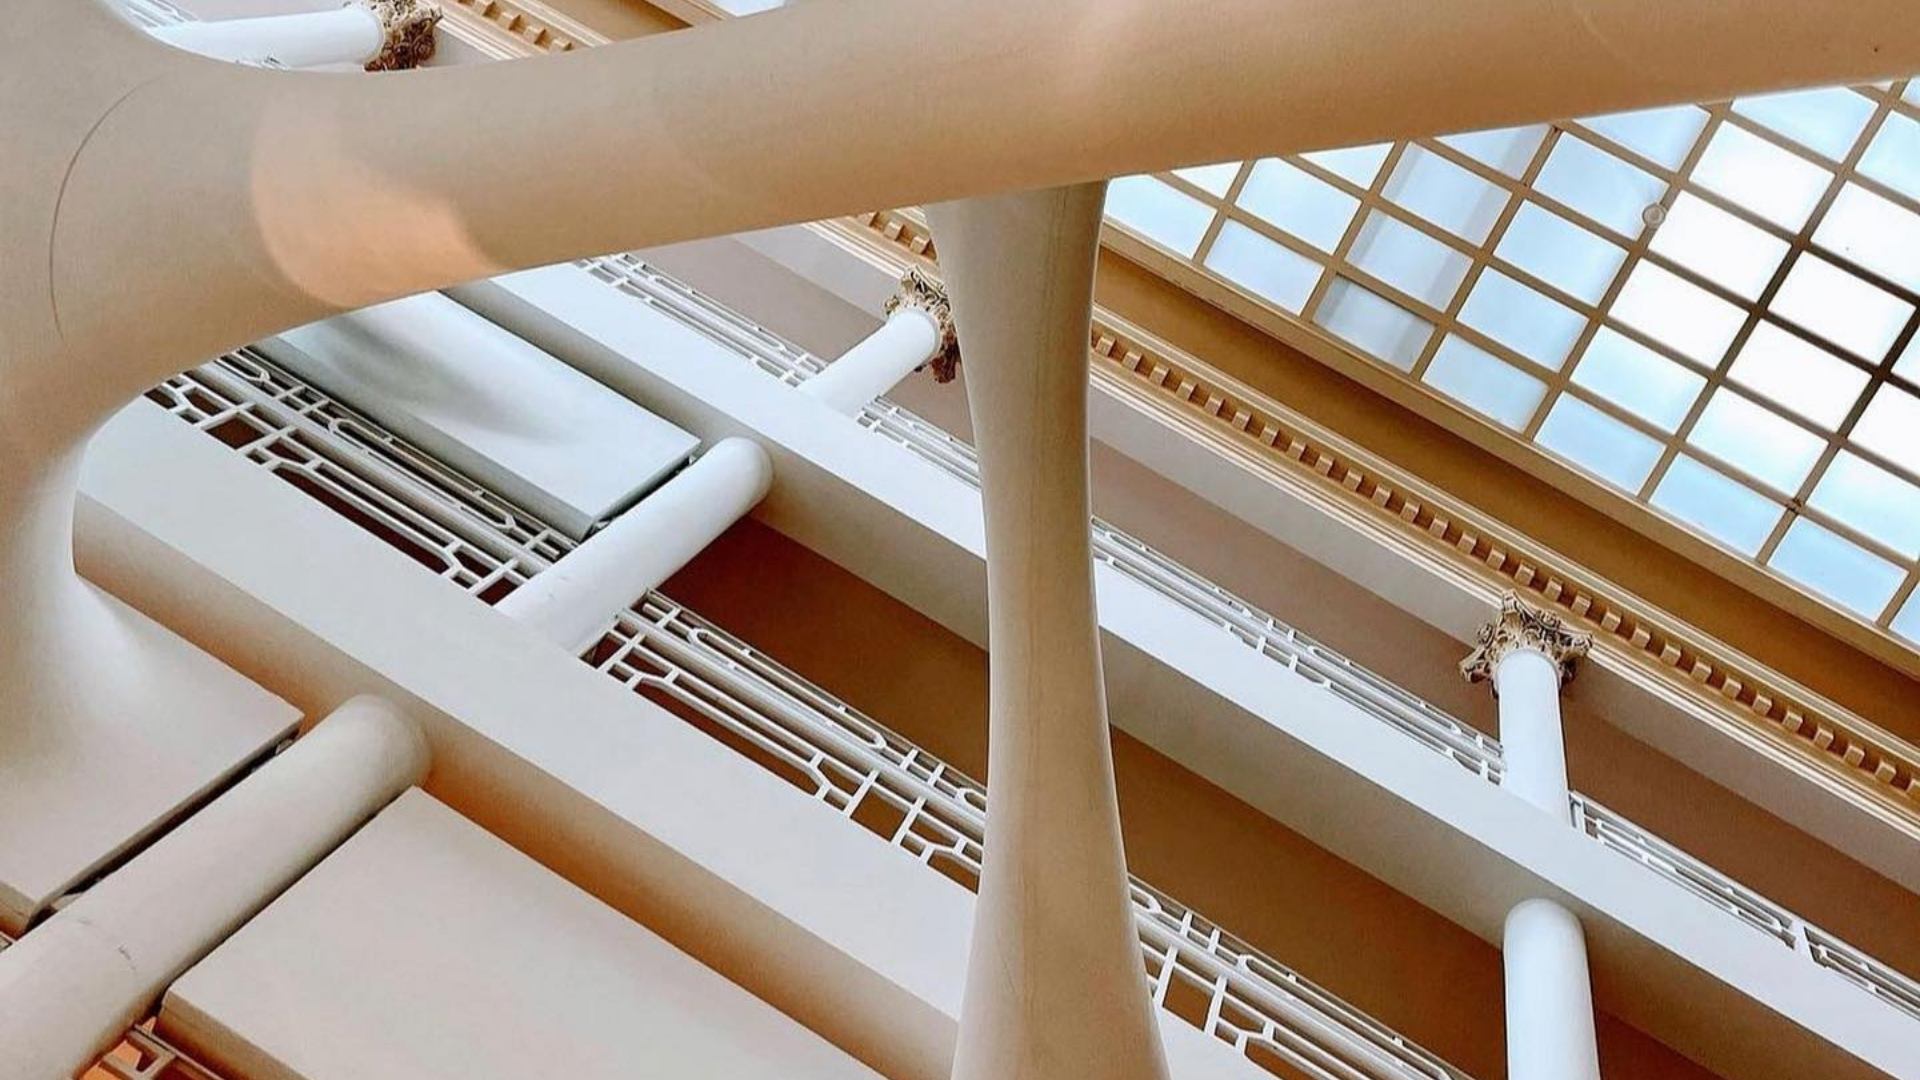 Installation "Elastika" by  architect Zaha Hadid